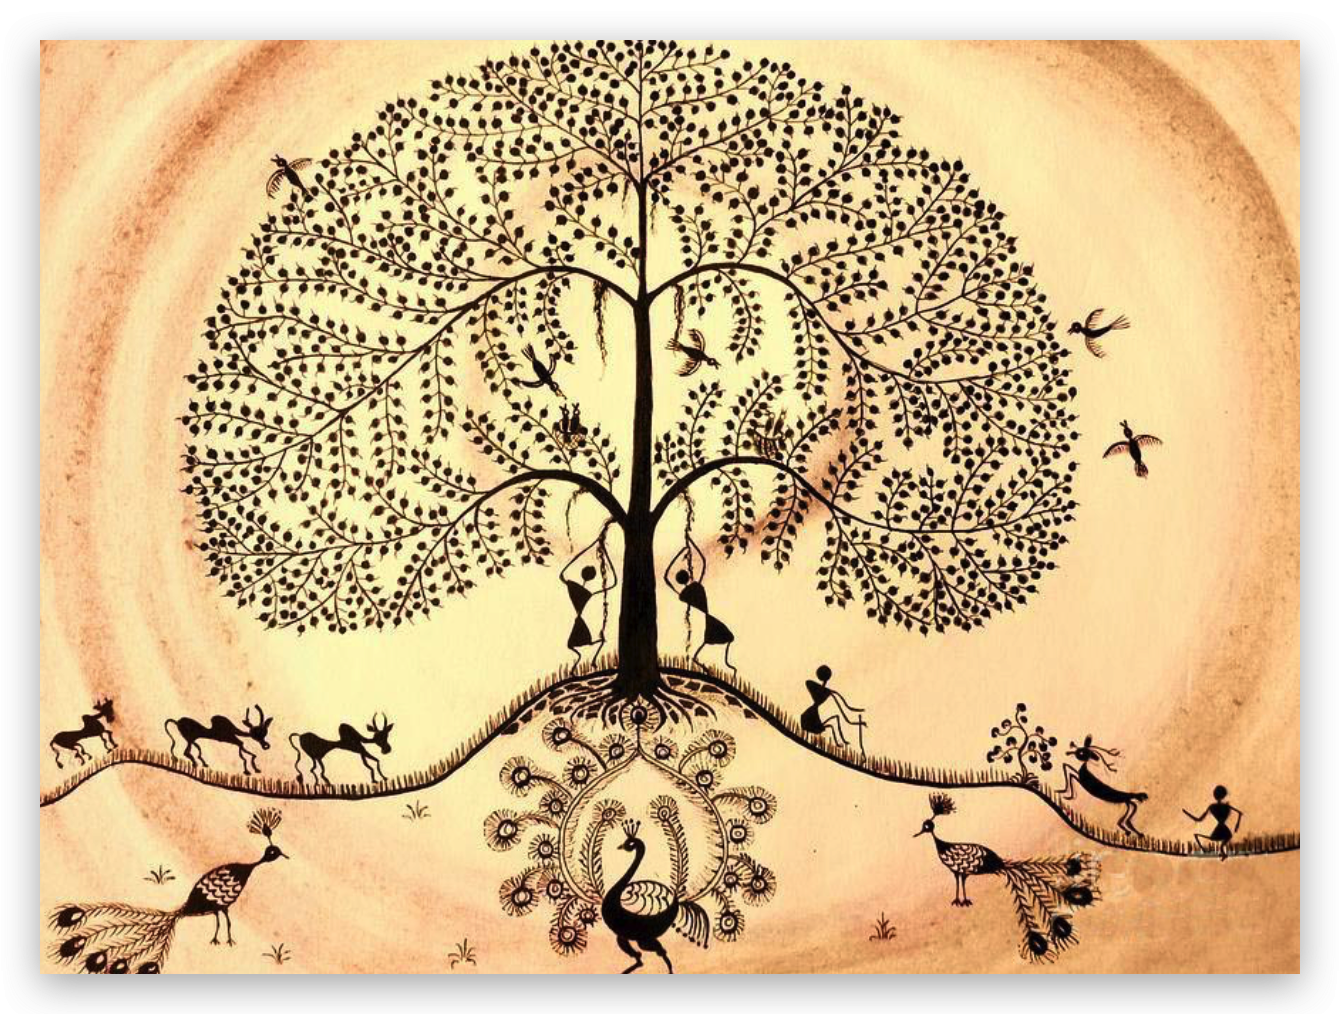 Дерево фусан китайская мифология. Мировое Древо Китая дерево фусан. Китайское Древо жизни Киен-му. Мировое Древо фусан картина.